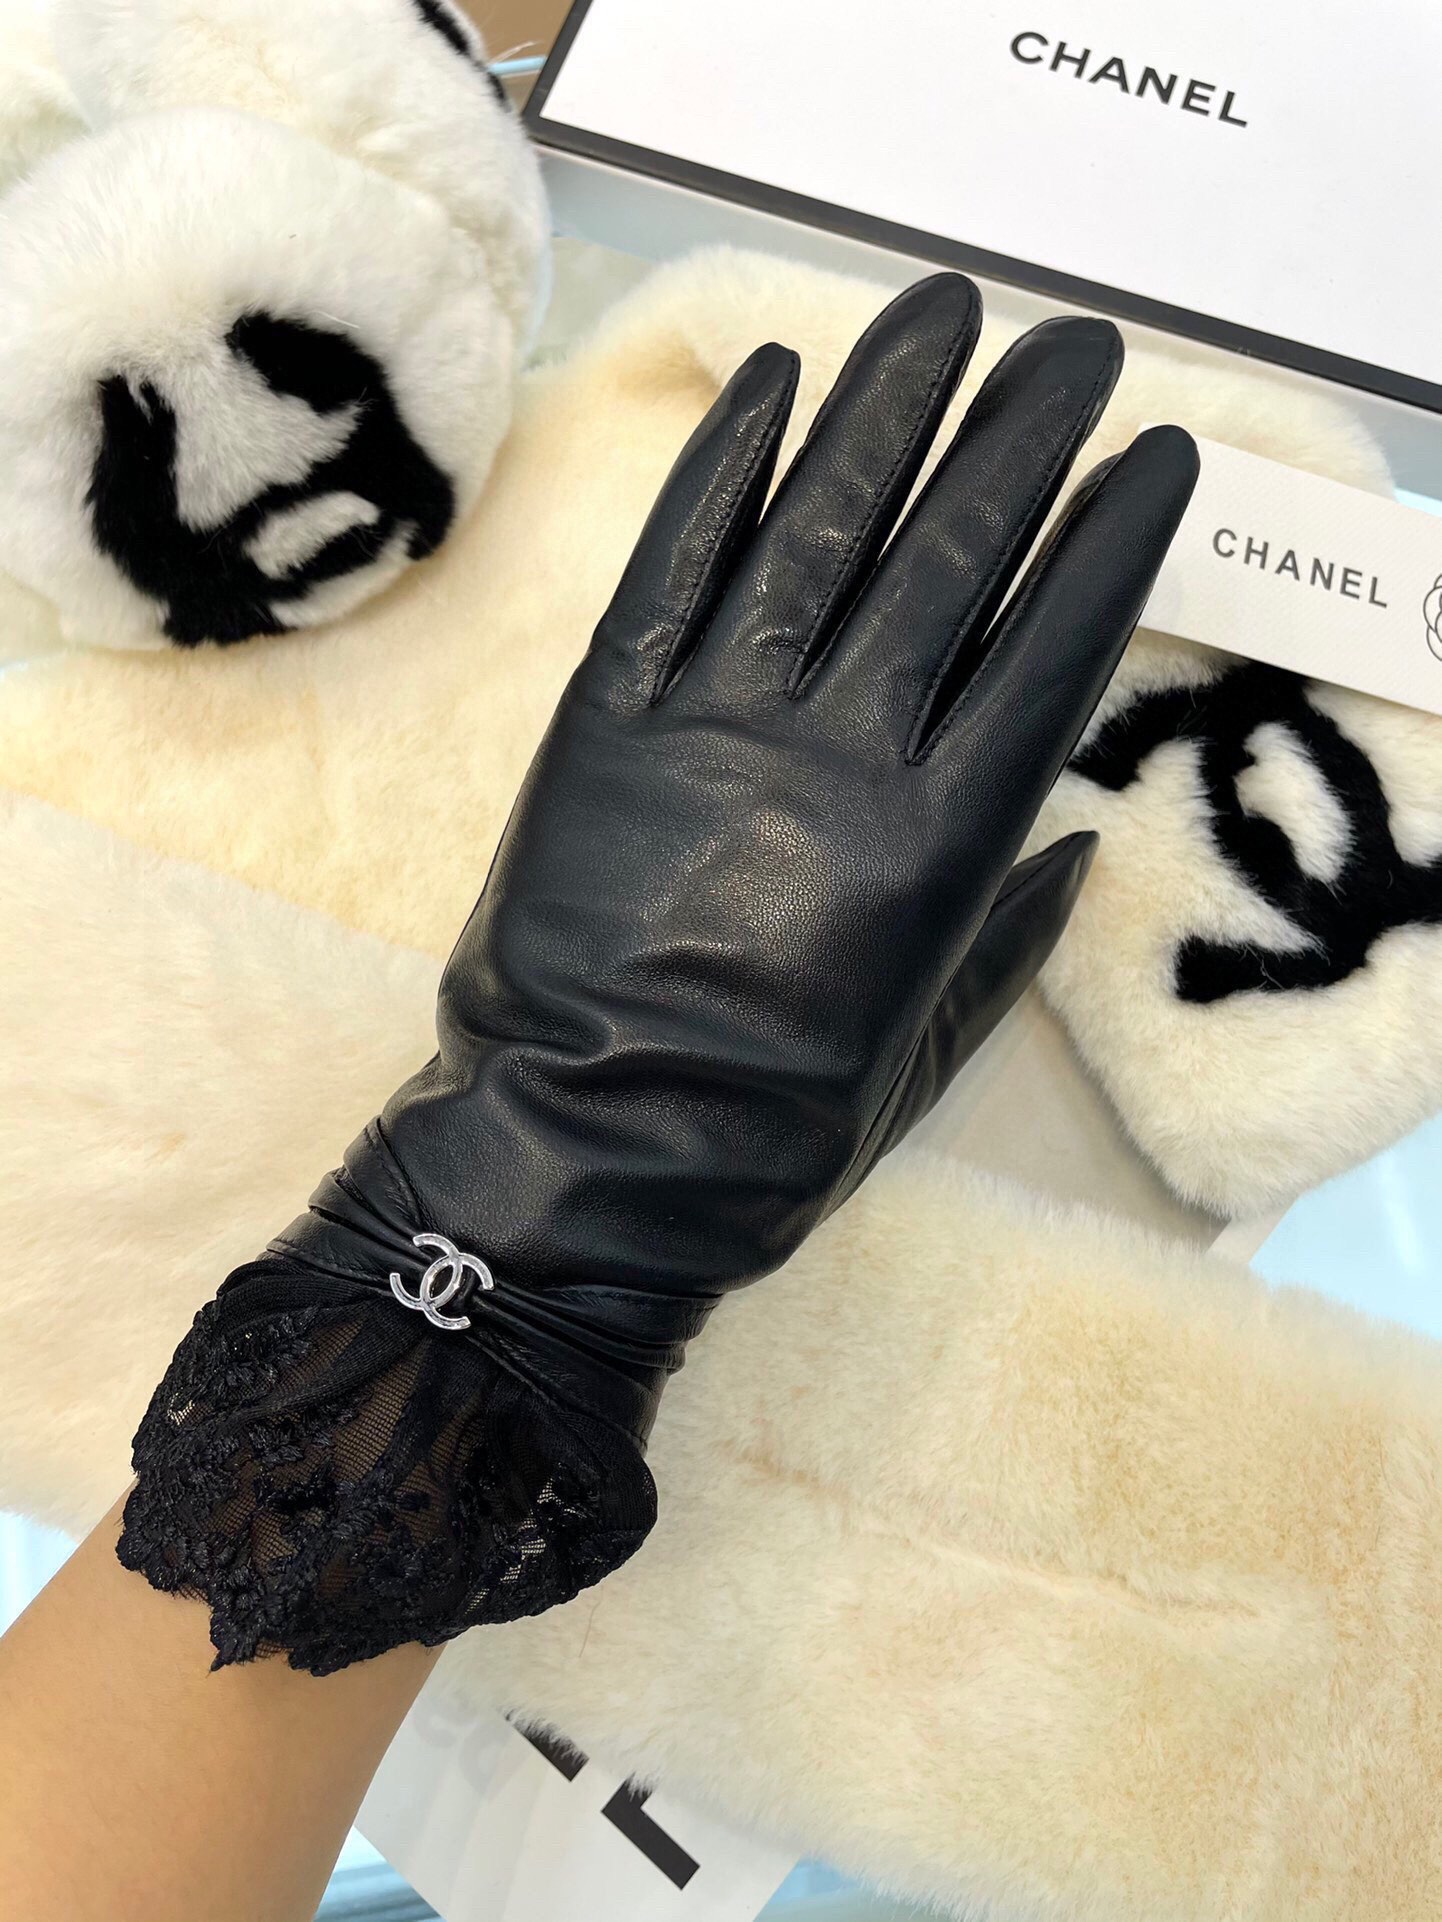 香奈儿新款女士手套一级羊皮皮质超薄柔软舒适特显手型质感超群码数L